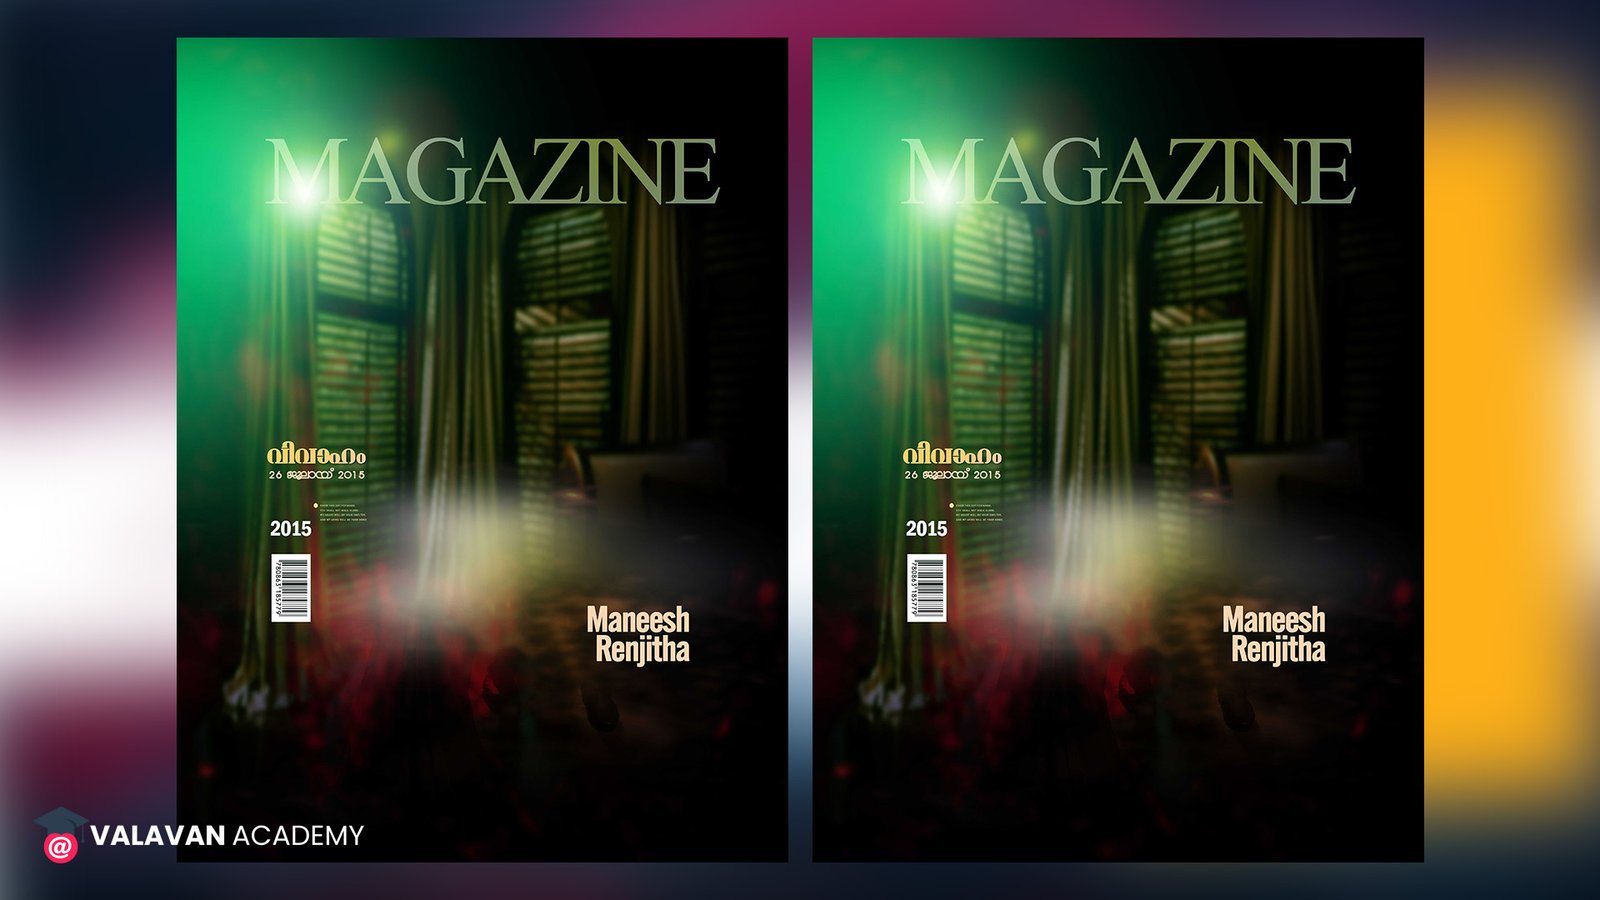 Magazine Cover Design Free Download